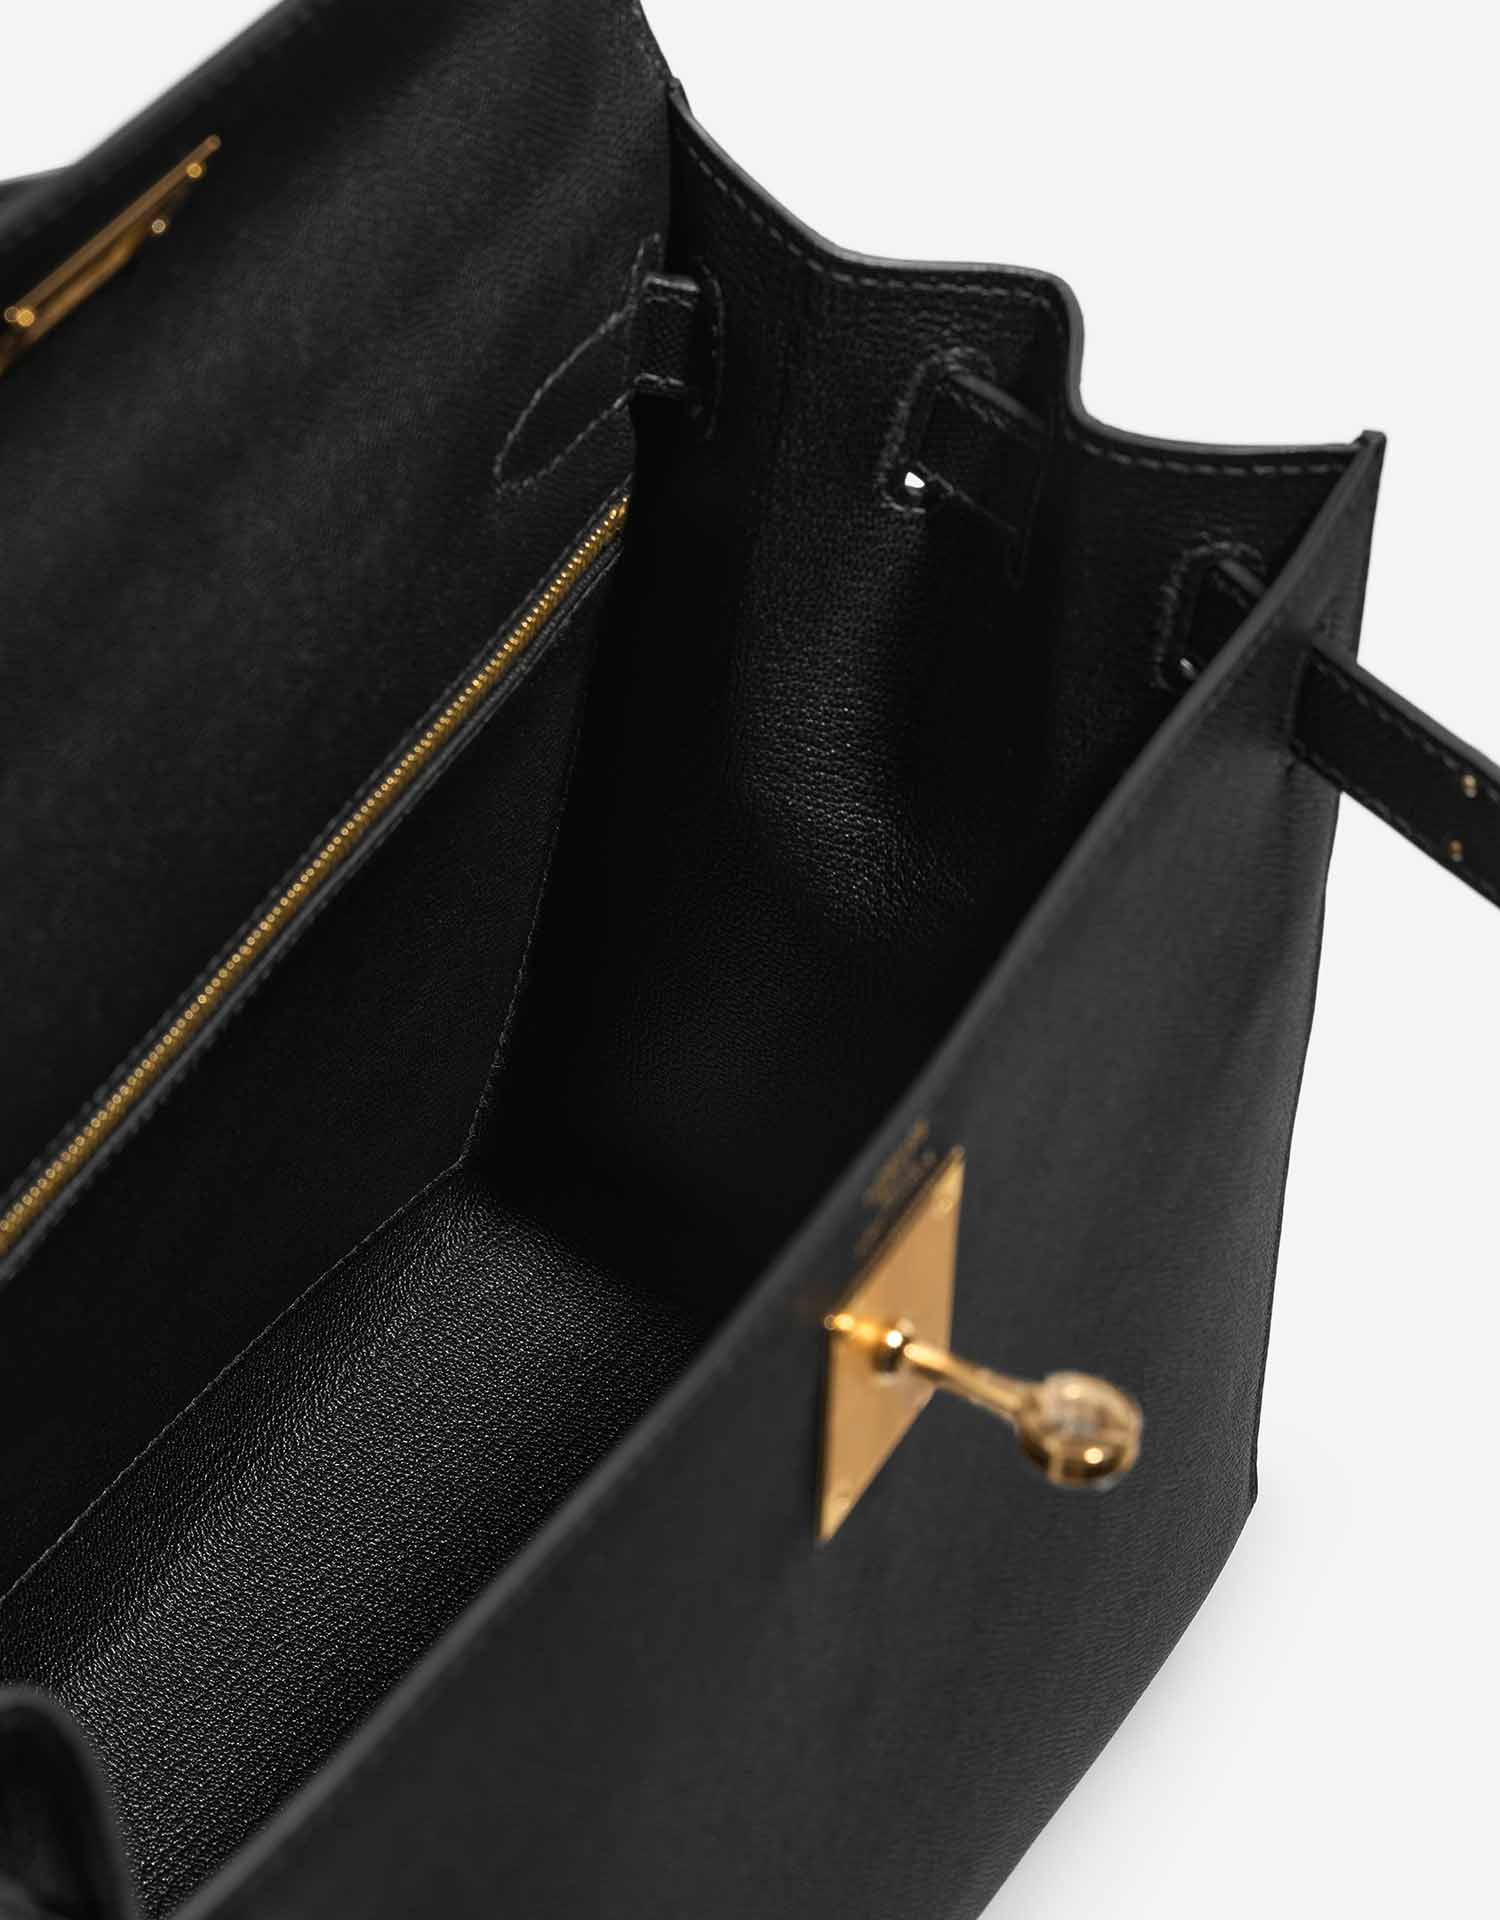 Hermès Kelly 28 Black Inside | Verkaufen Sie Ihre Designertasche auf Saclab.com